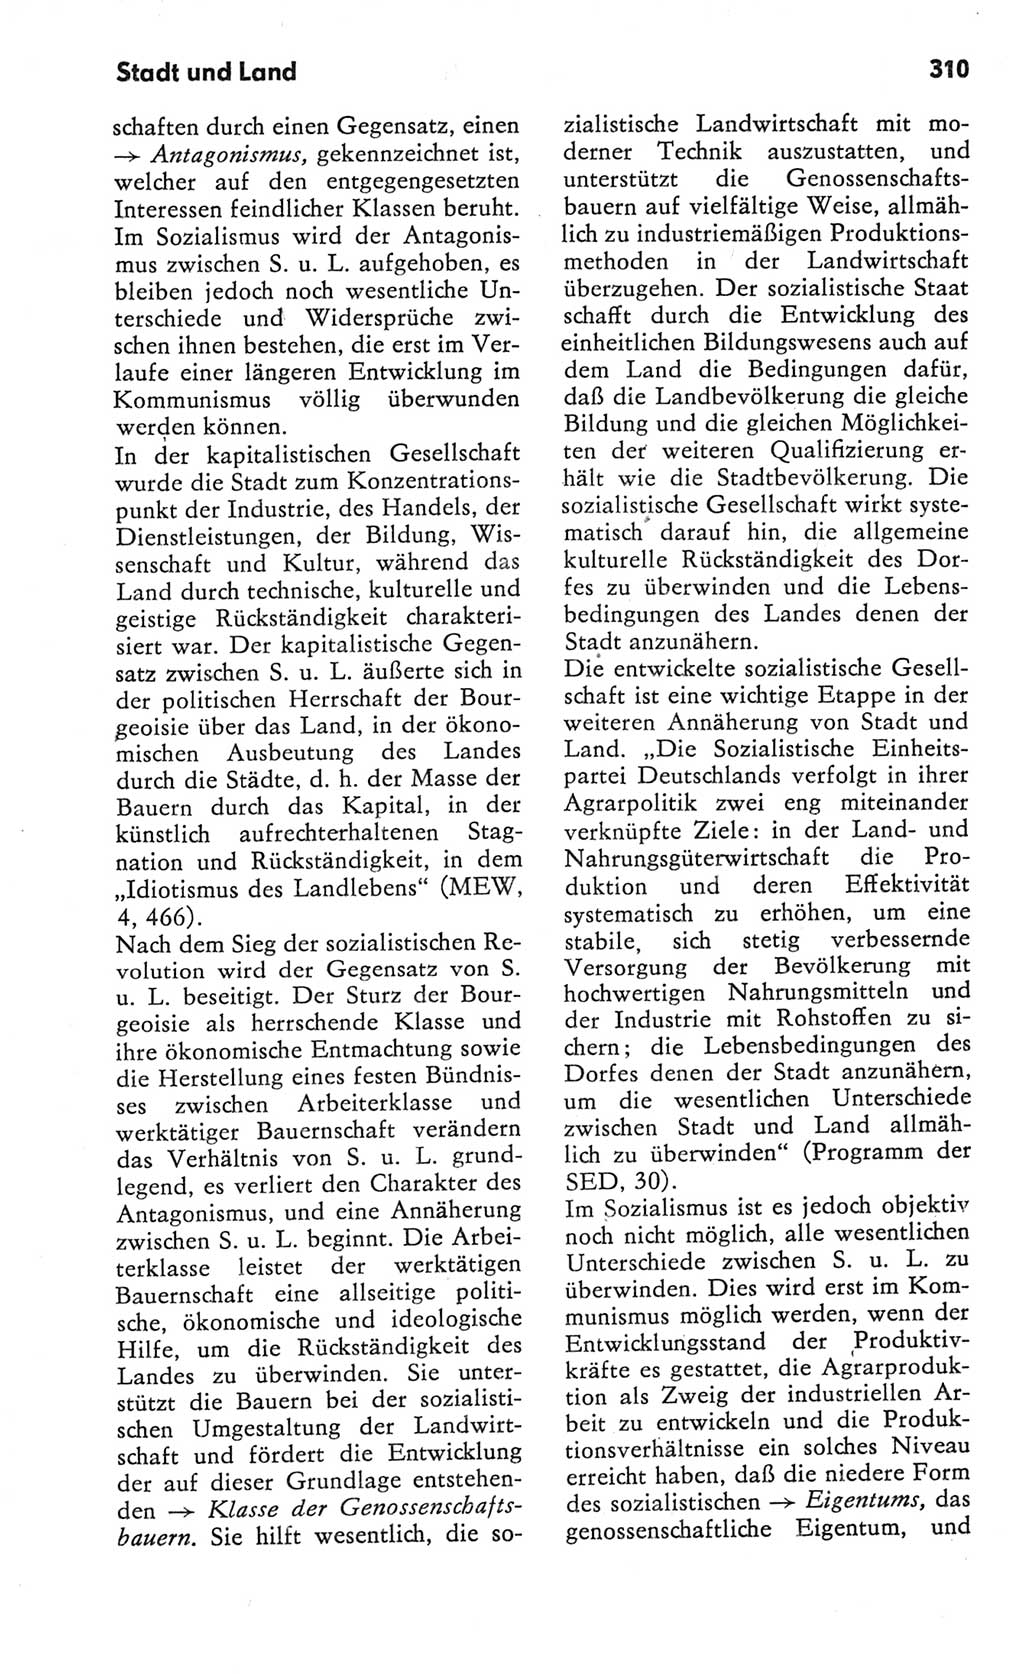 Kleines Wörterbuch der marxistisch-leninistischen Philosophie [Deutsche Demokratische Republik (DDR)] 1982, Seite 310 (Kl. Wb. ML Phil. DDR 1982, S. 310)